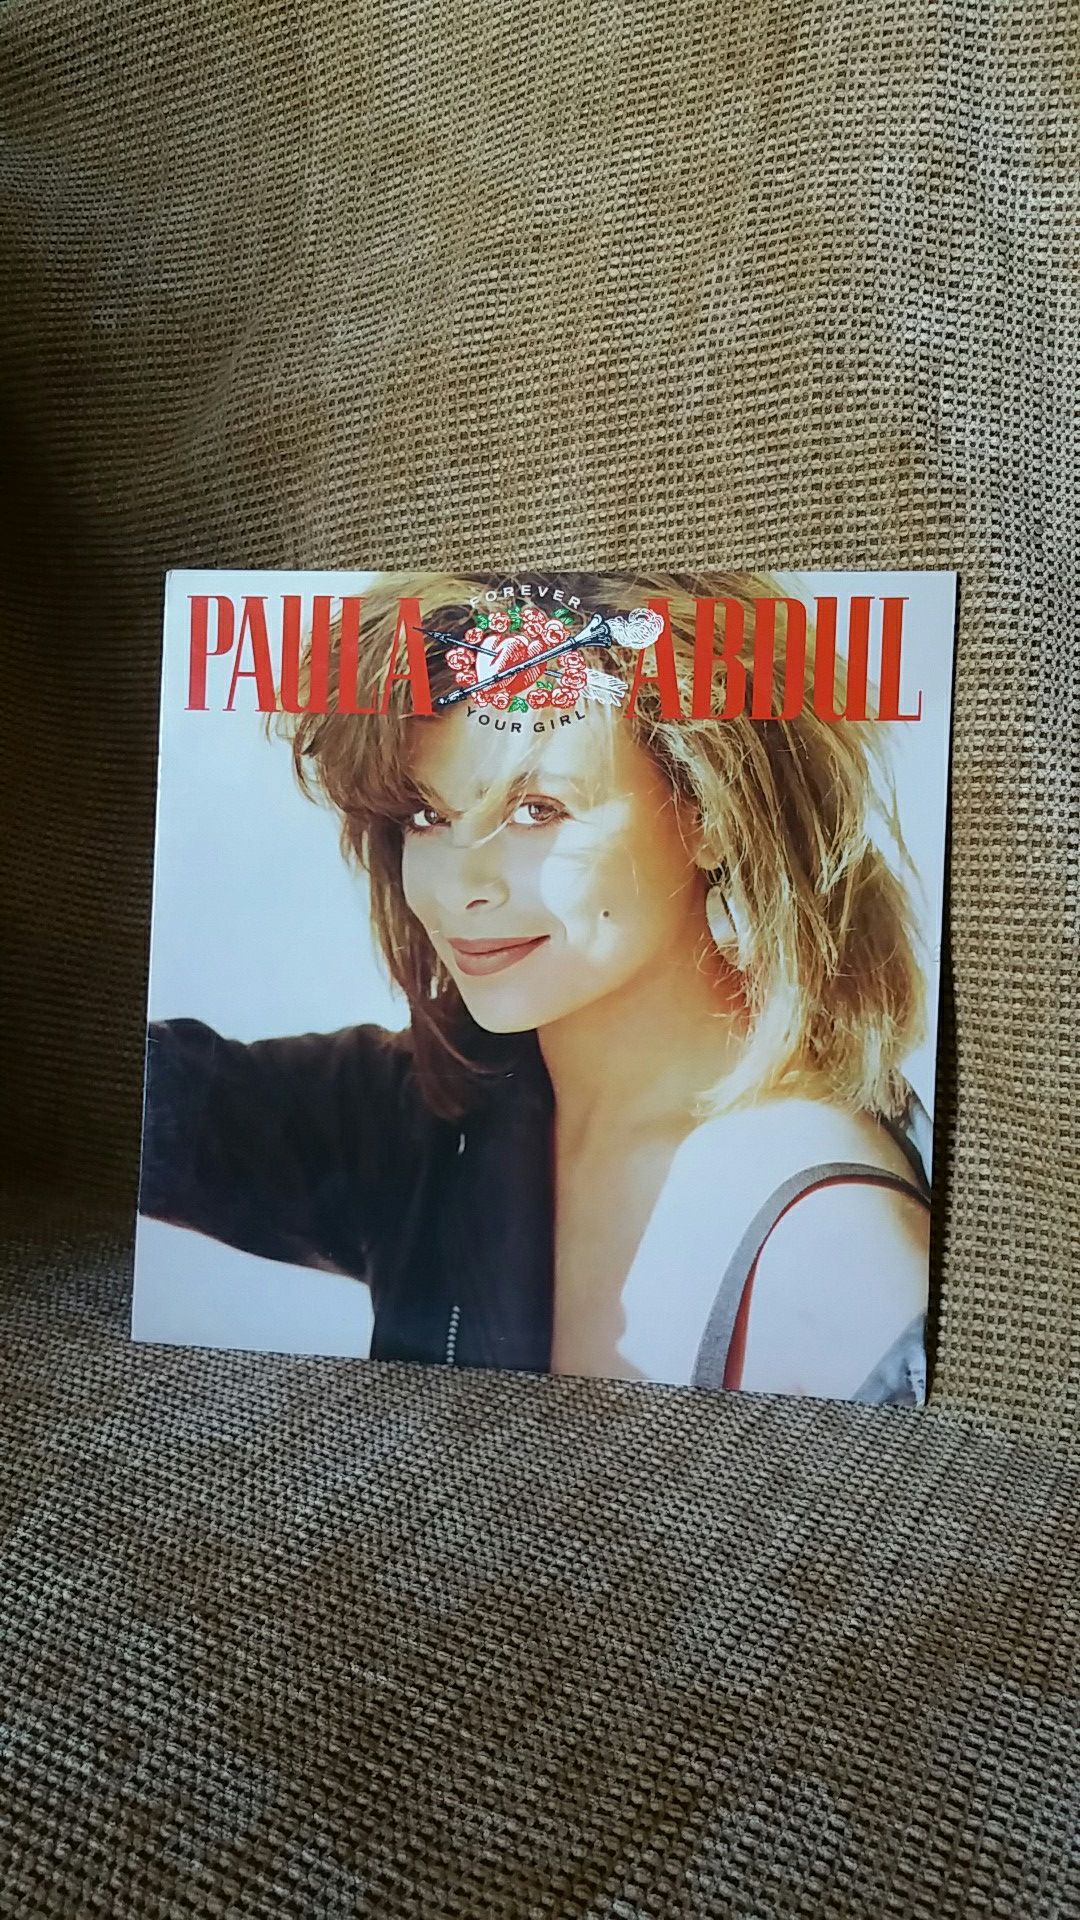 Paula Abdul "Forever Your Girl."